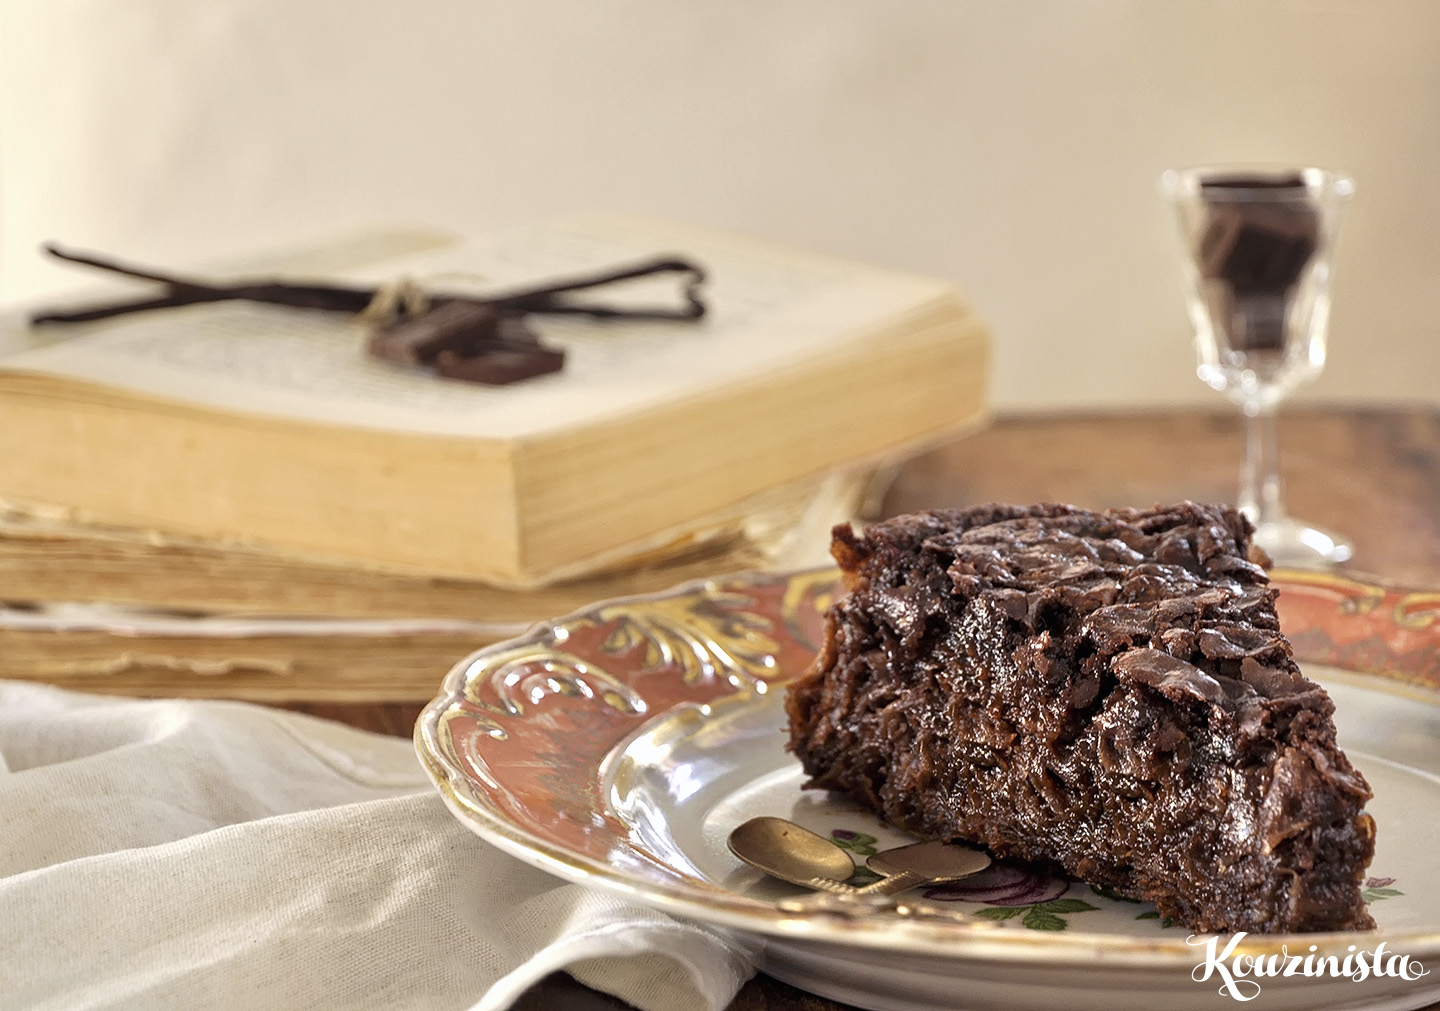 Σιροπιαστή σοκολατόπιτα με φύλλα / Chocolate pie with phyllo pastry and chocolate syrup